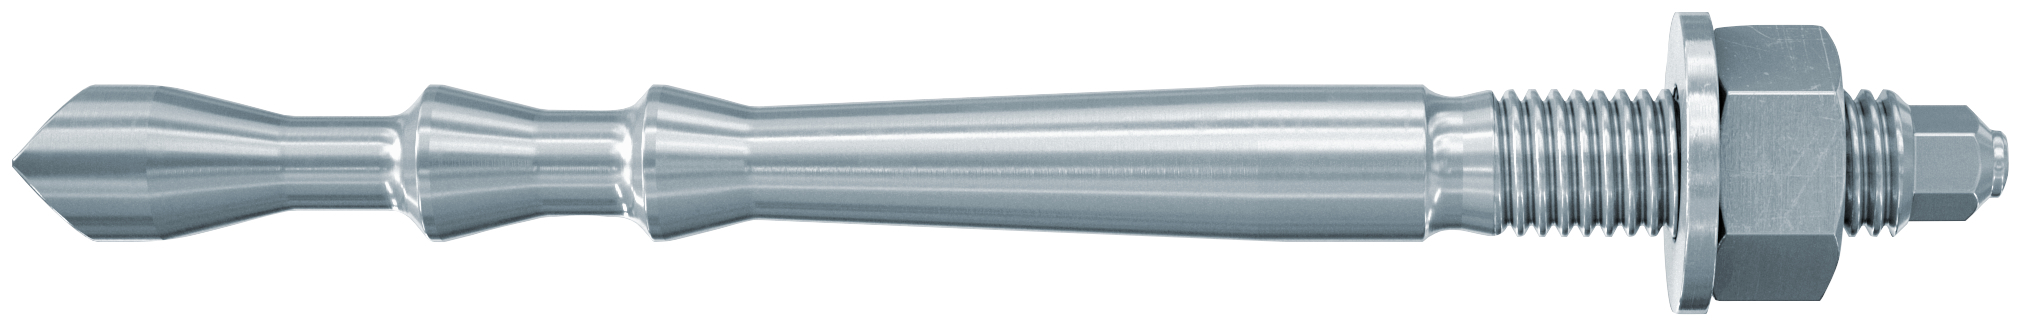 fischer Barra multicono in acciaio FHB II-A L M16 X 145-30 per ancorante chimico FIS HB (1 Pz.) Barra multicono lunga in acciaio zincato classe 8.8. Massime prestazioni a trazione in calcestruzzo fessurato e a ridotte distanze dai bordi. fie1821